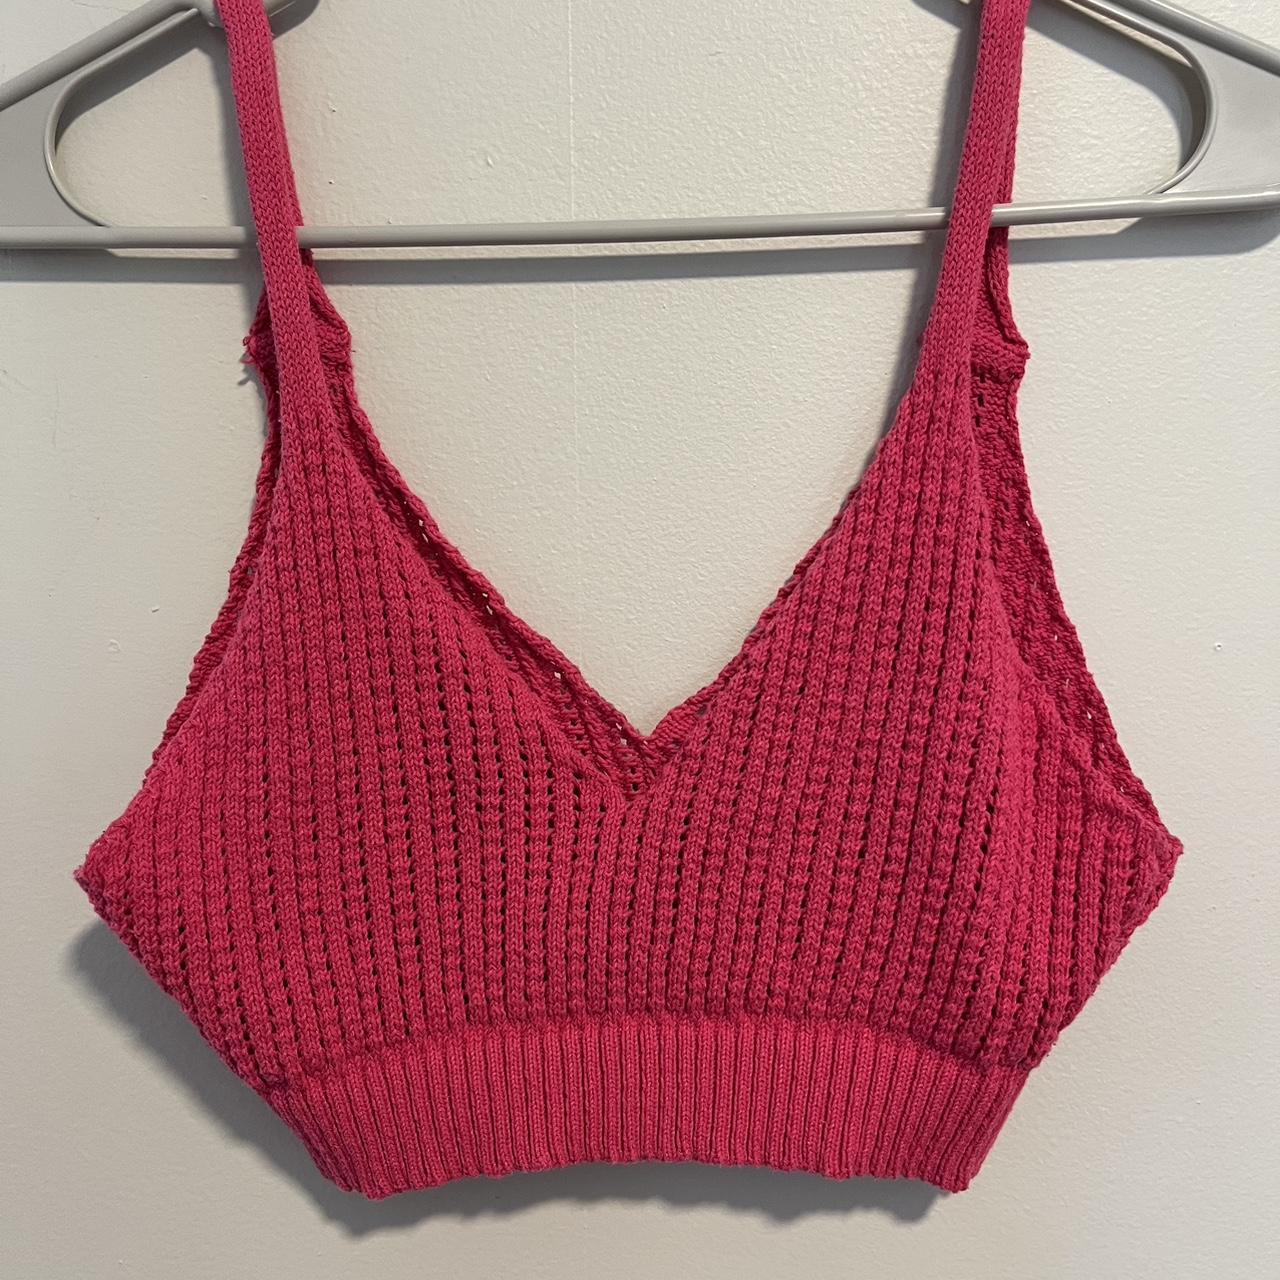 Hot pink Zara crochet top. Perfect for summer or a... - Depop